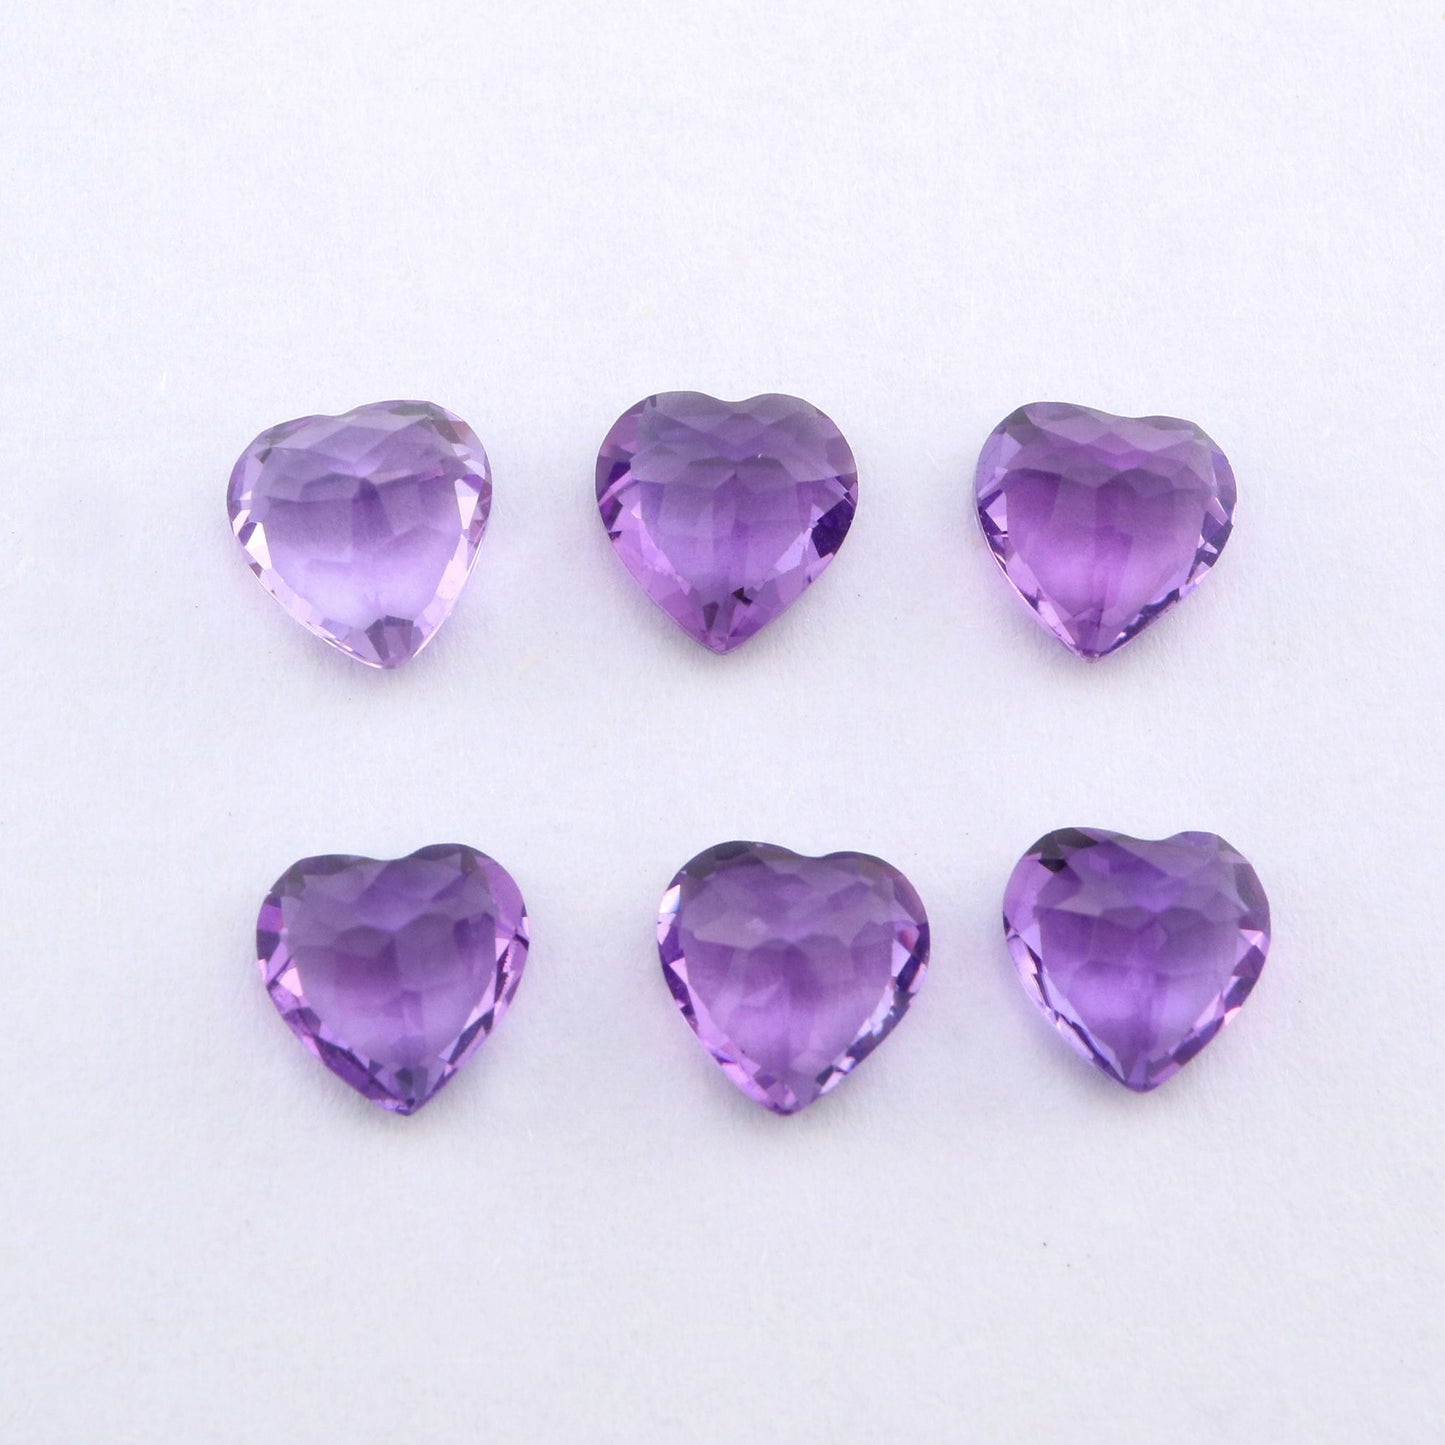 Six heart cut purple amethysts.